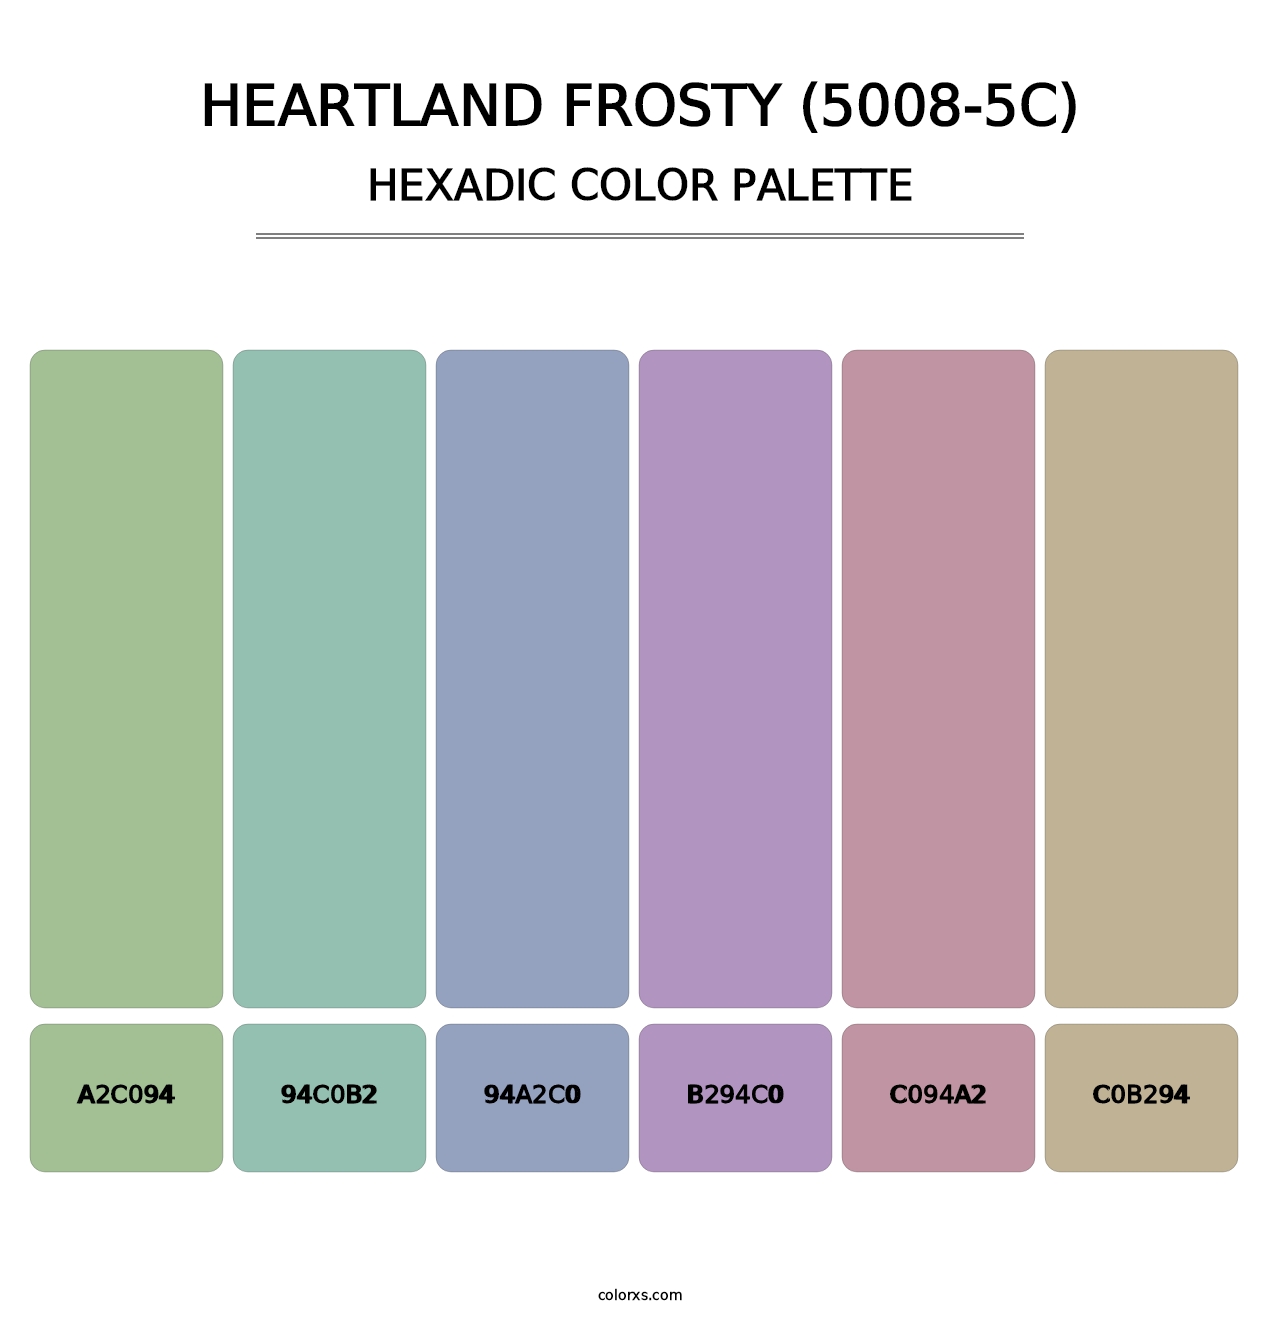 Heartland Frosty (5008-5C) - Hexadic Color Palette